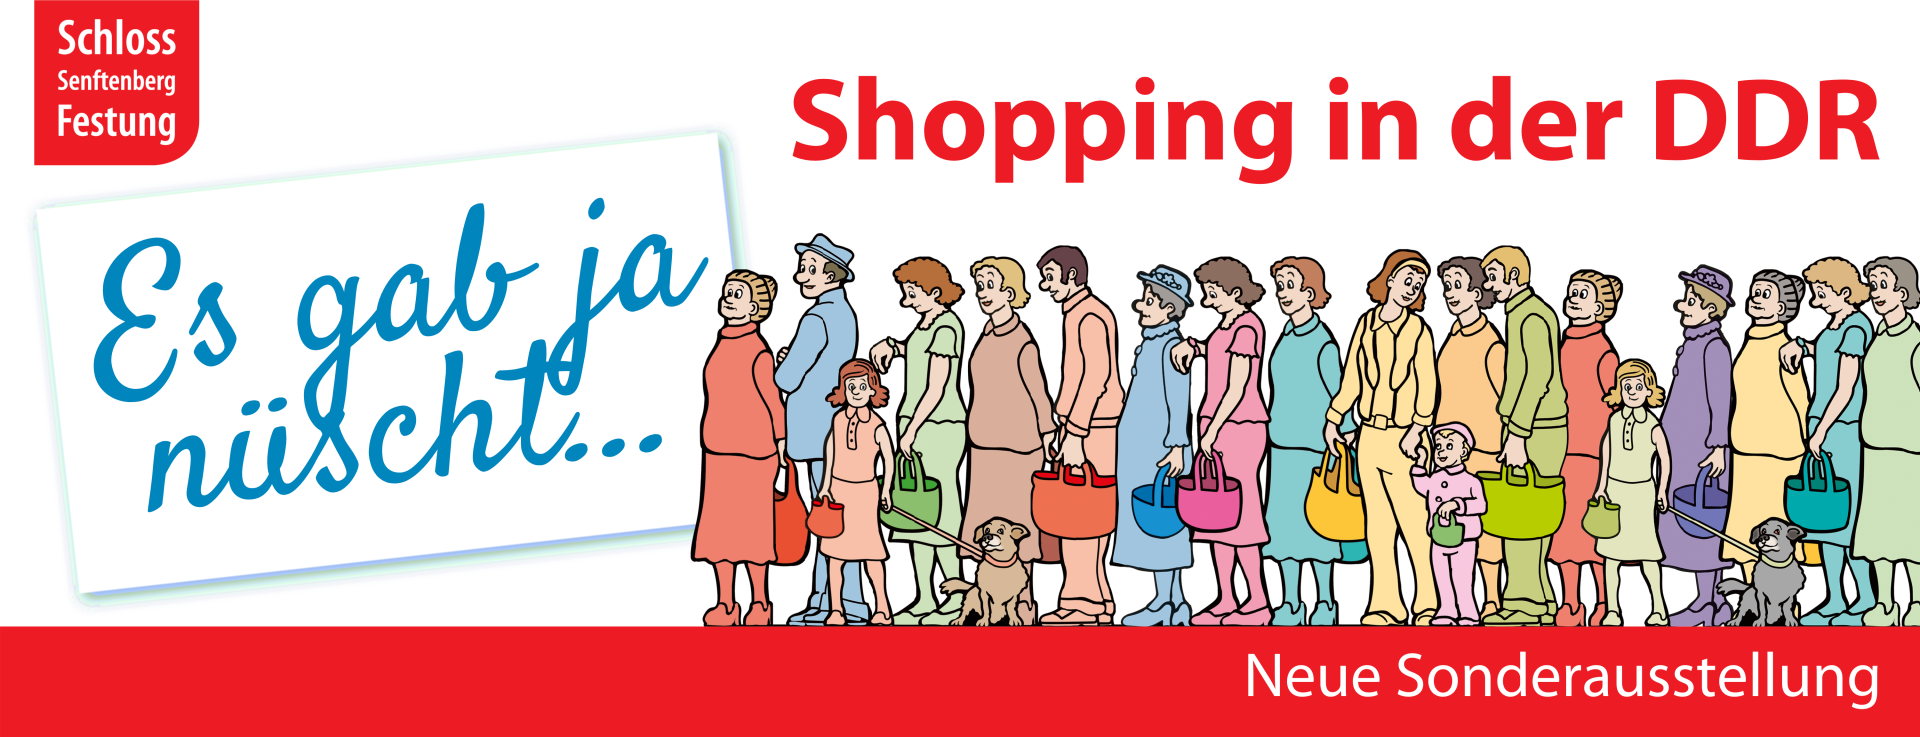 Header Shopping in der DDR